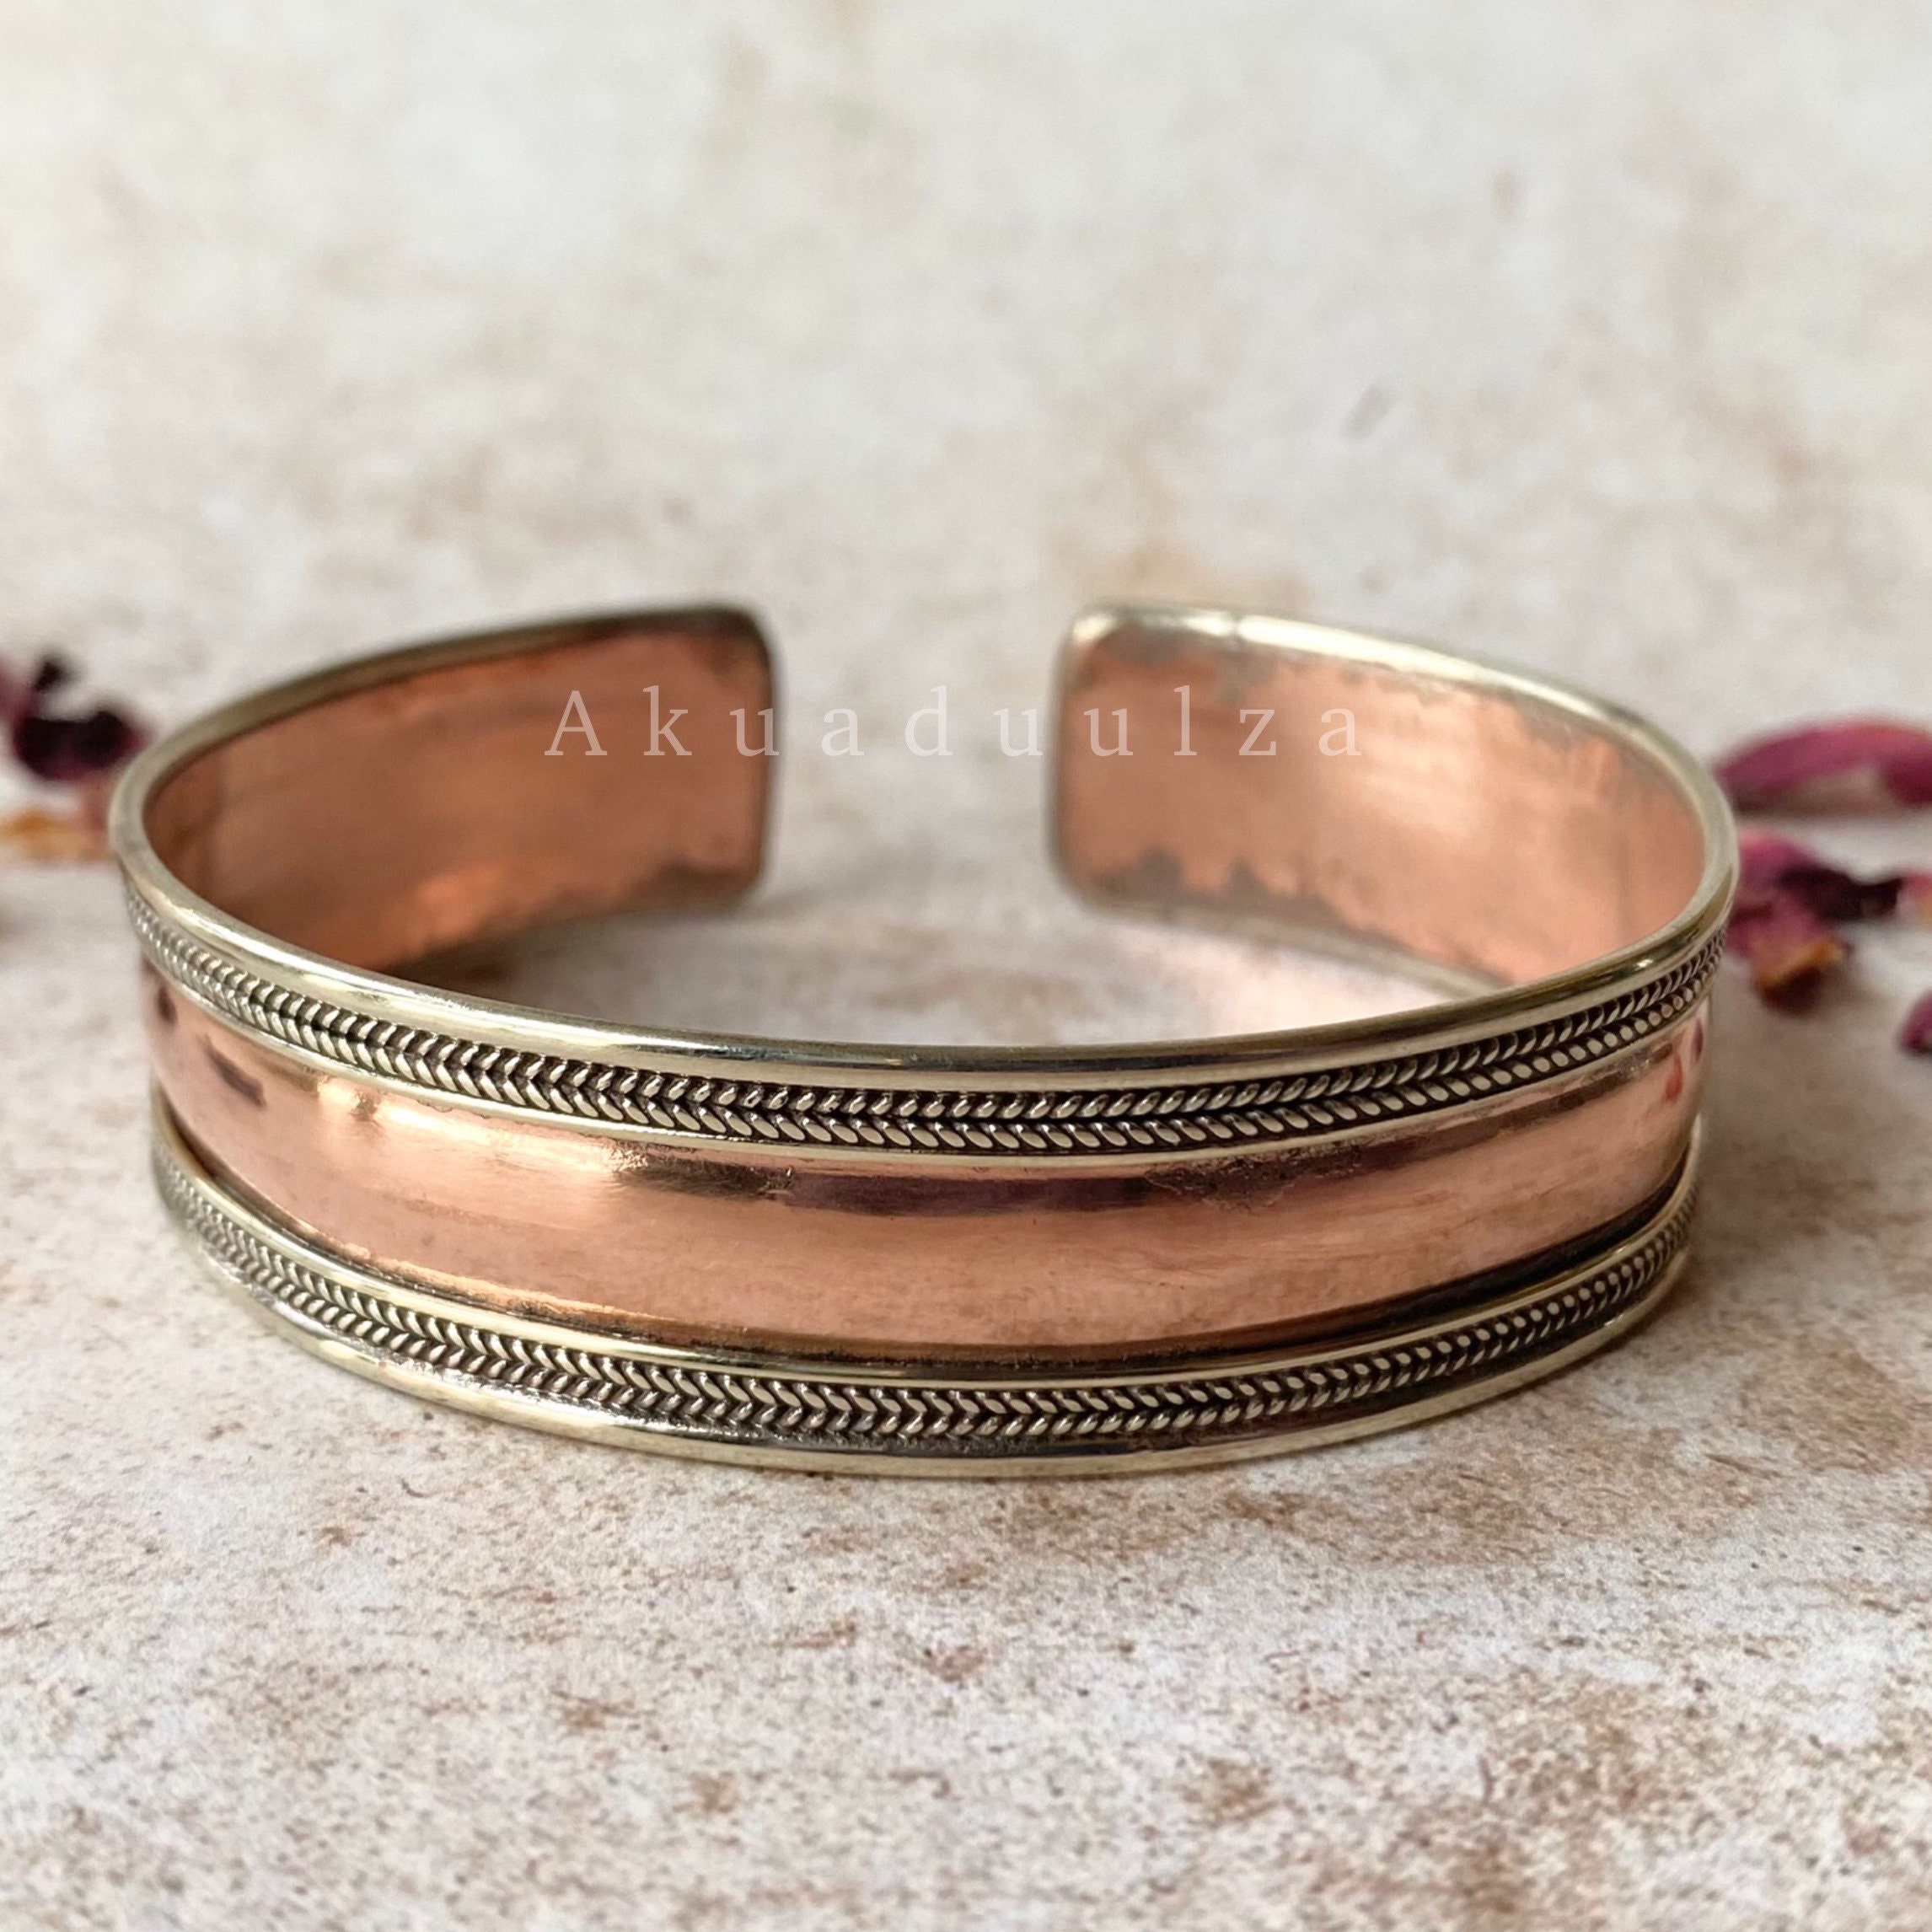 Copper Bracelet, Handmade Premium Pure Solid Copper Chain, Raw